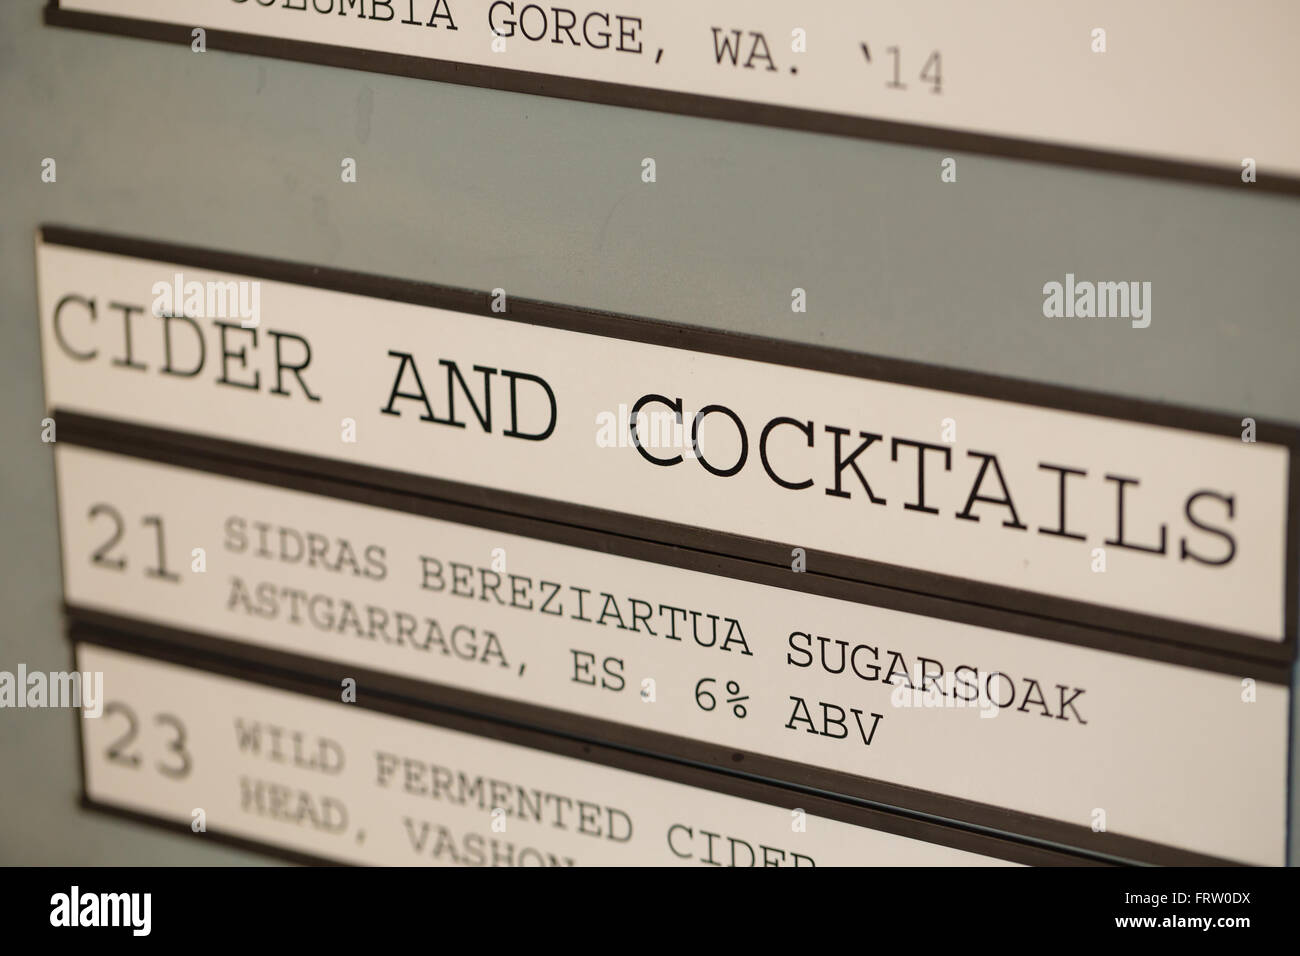 PORTLAND, OR - 24. Oktober 2015: Apfelwein und Cocktails Getränkekarte an Coopers Hall Bierschenke. Stockfoto